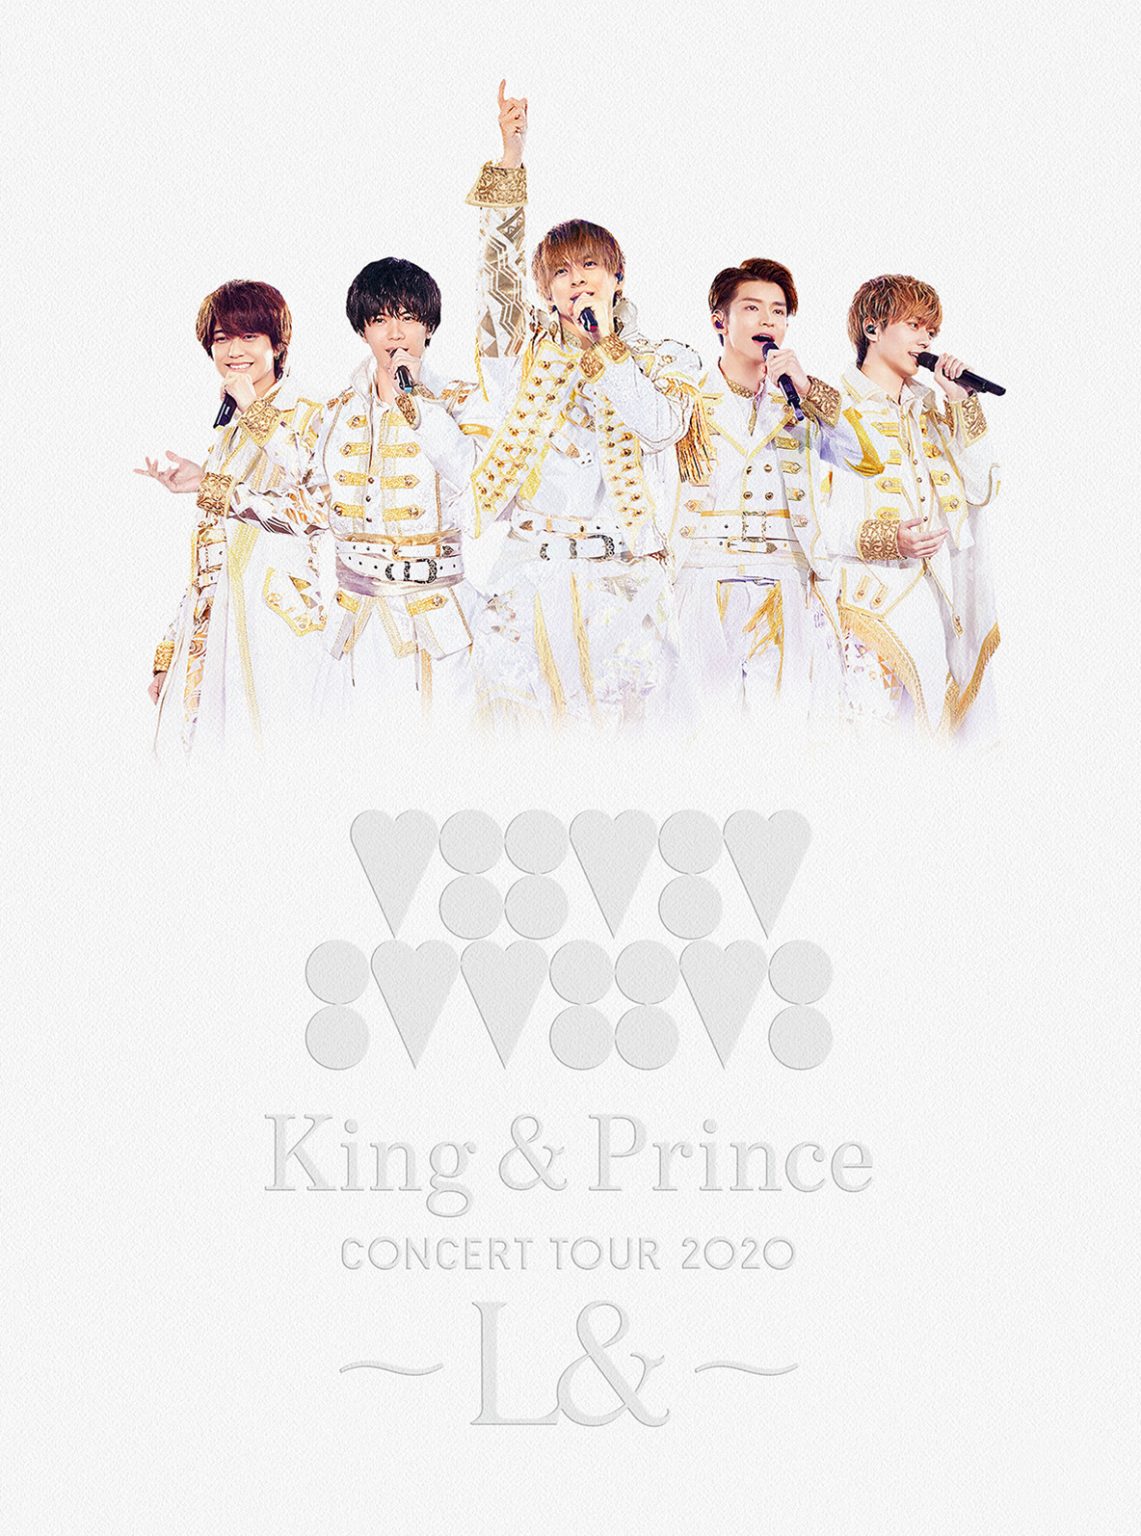 【1/22更新】3rd Live Blu-ray & DVD「King & Prince CONCERT TOUR 2020 〜L&〜」2月